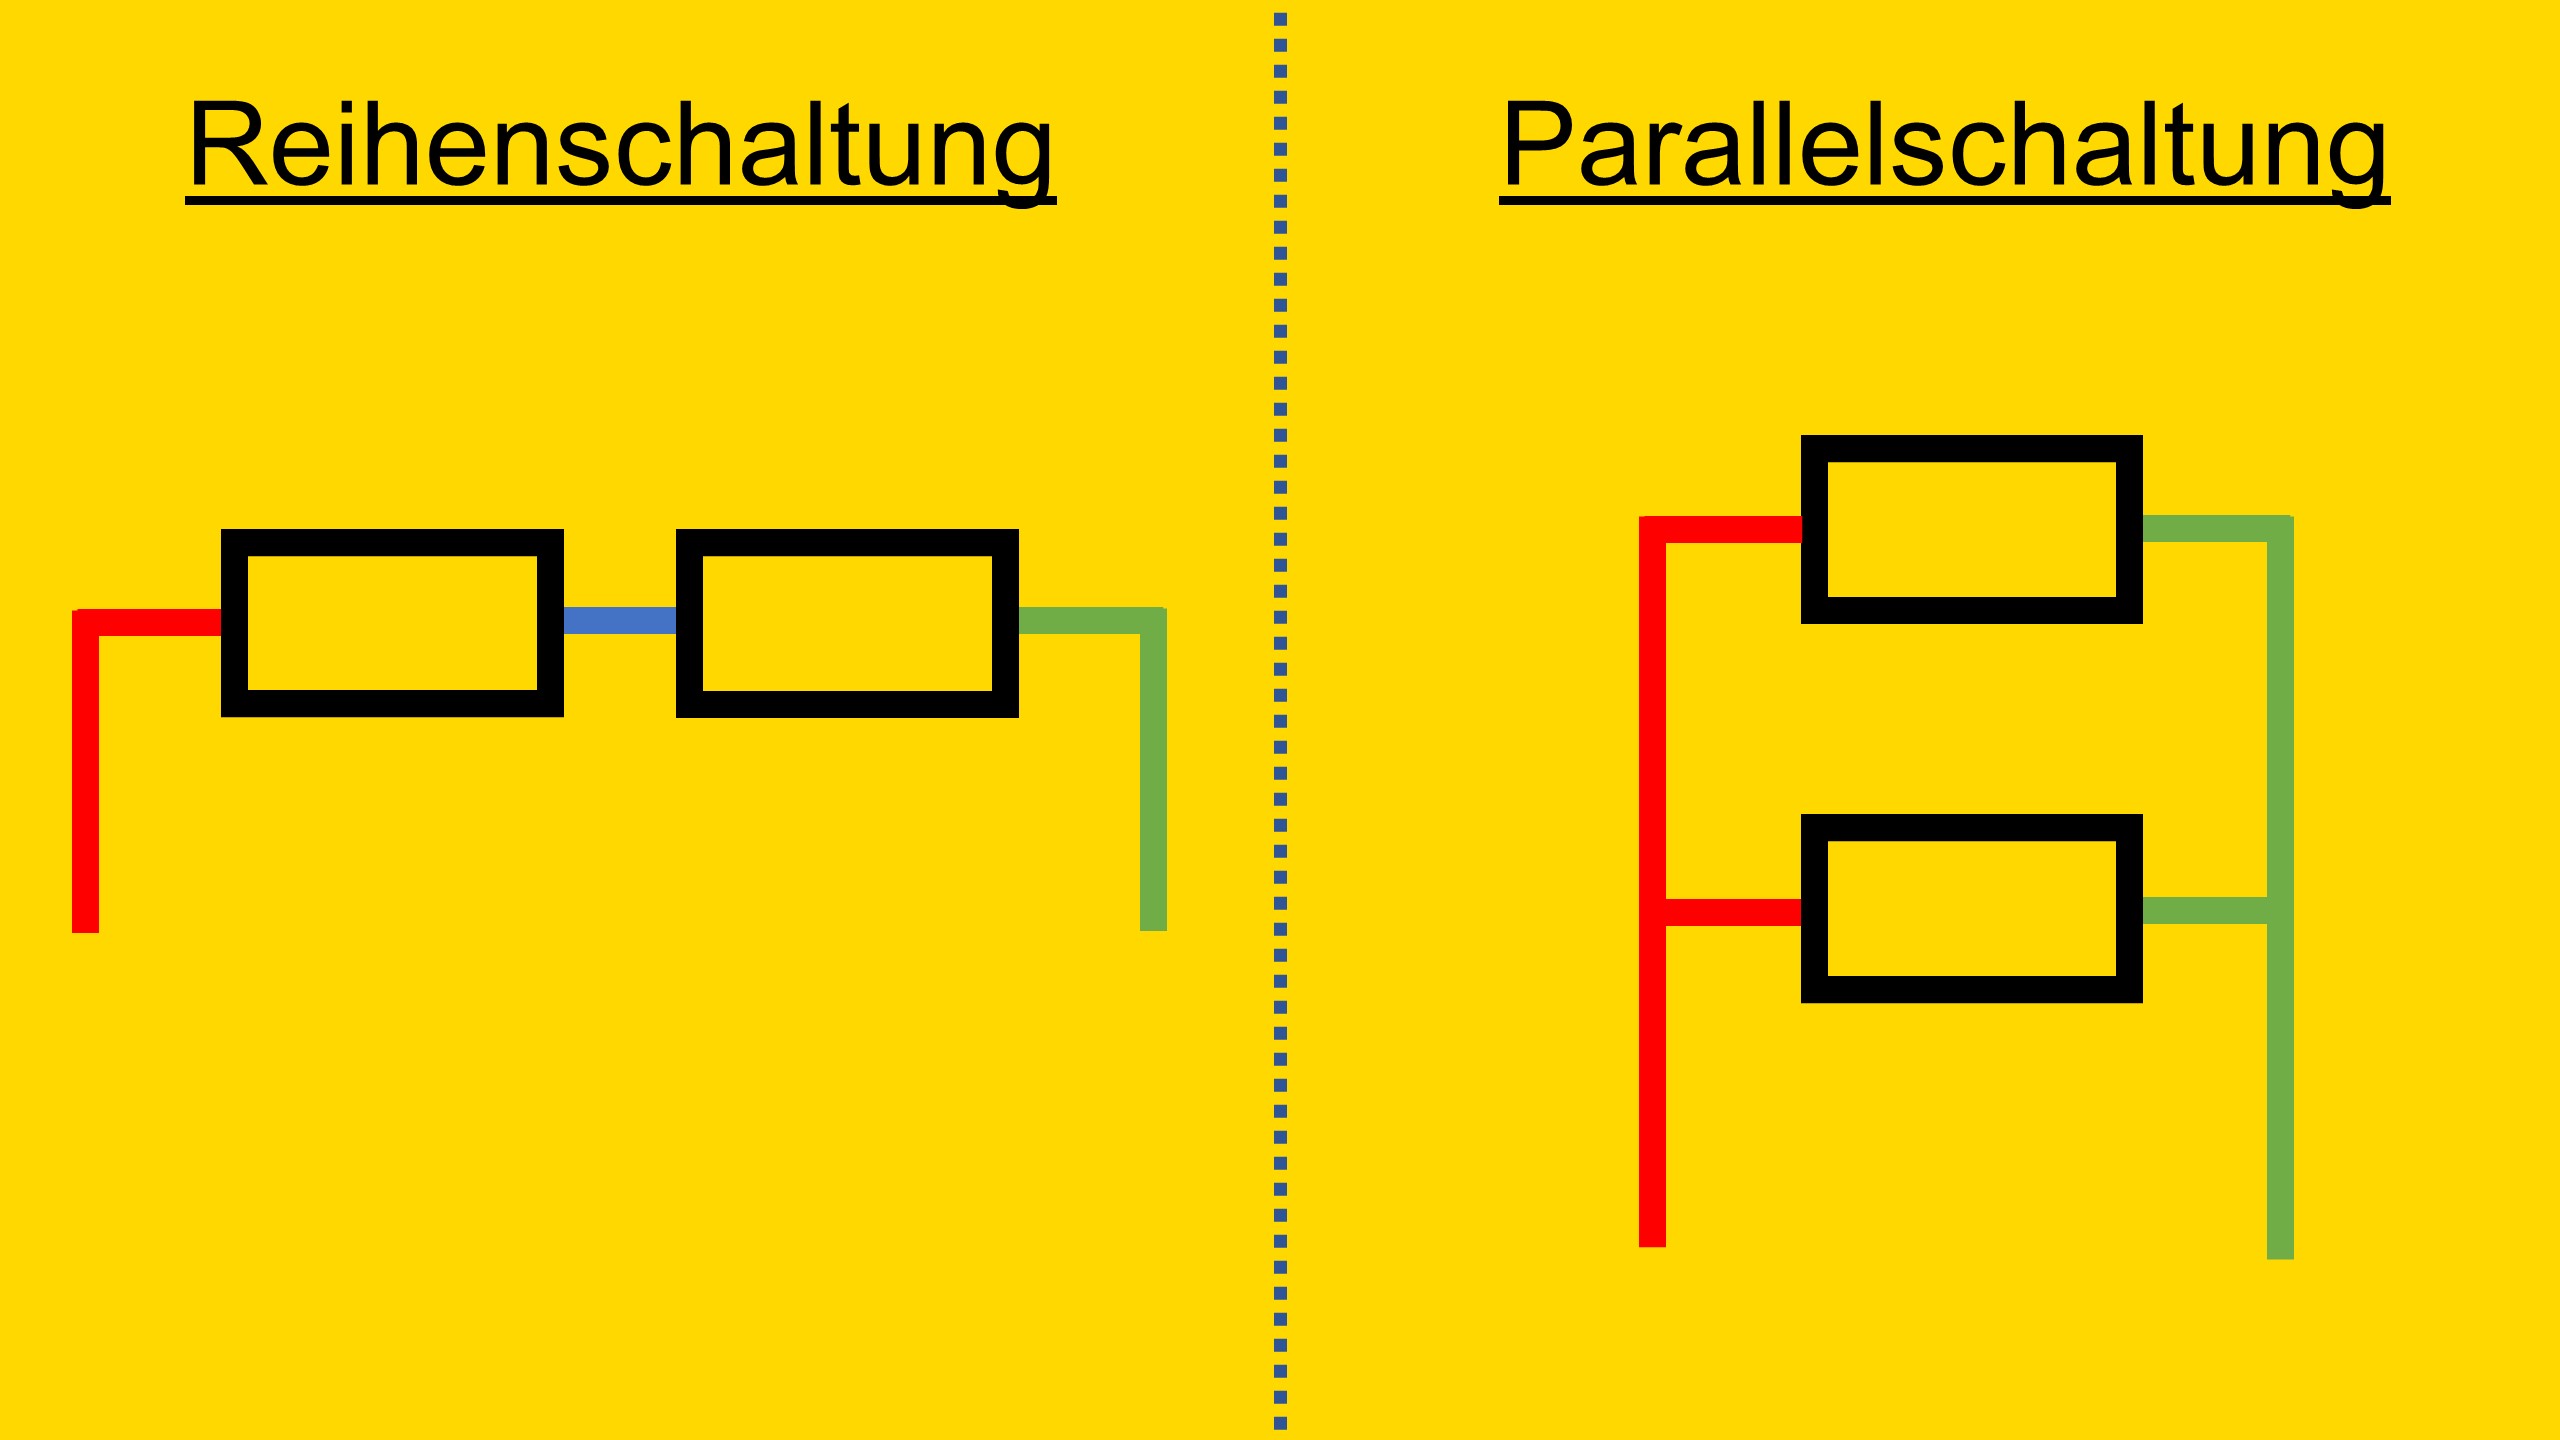 Dieses Bild zeigt den Vergleich zwischen Reihenschaltung und Parallelschaltung